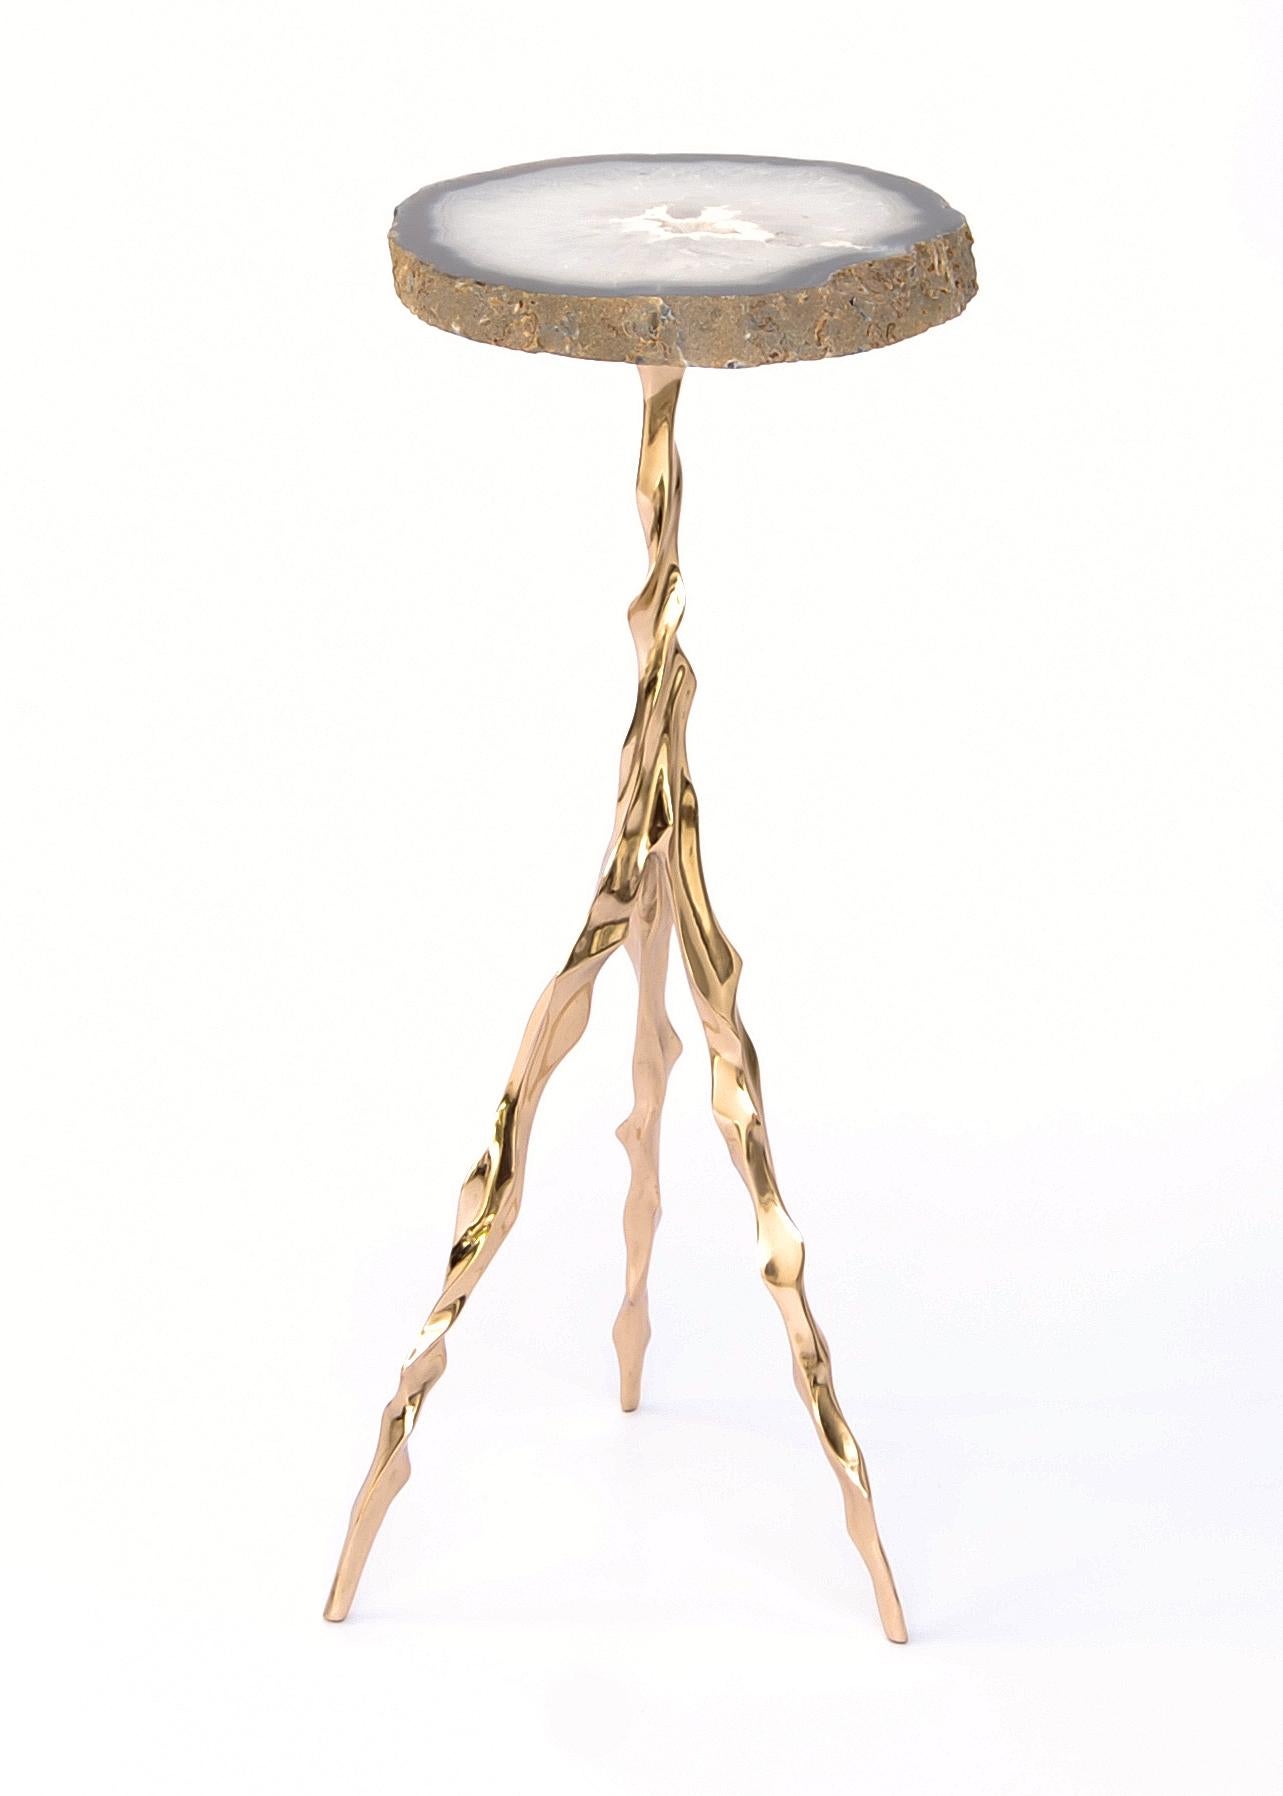 Table à boire Etta avec plateau en agate de Fakasaka Design.
Dimensions : L 27 cm, P 27 cm, H 62 cm.
Matériaux : base en bronze poli, plateau en agate.
 
Disponible également dans différents matériaux de plateau de table :
Marbre Nero Marquina